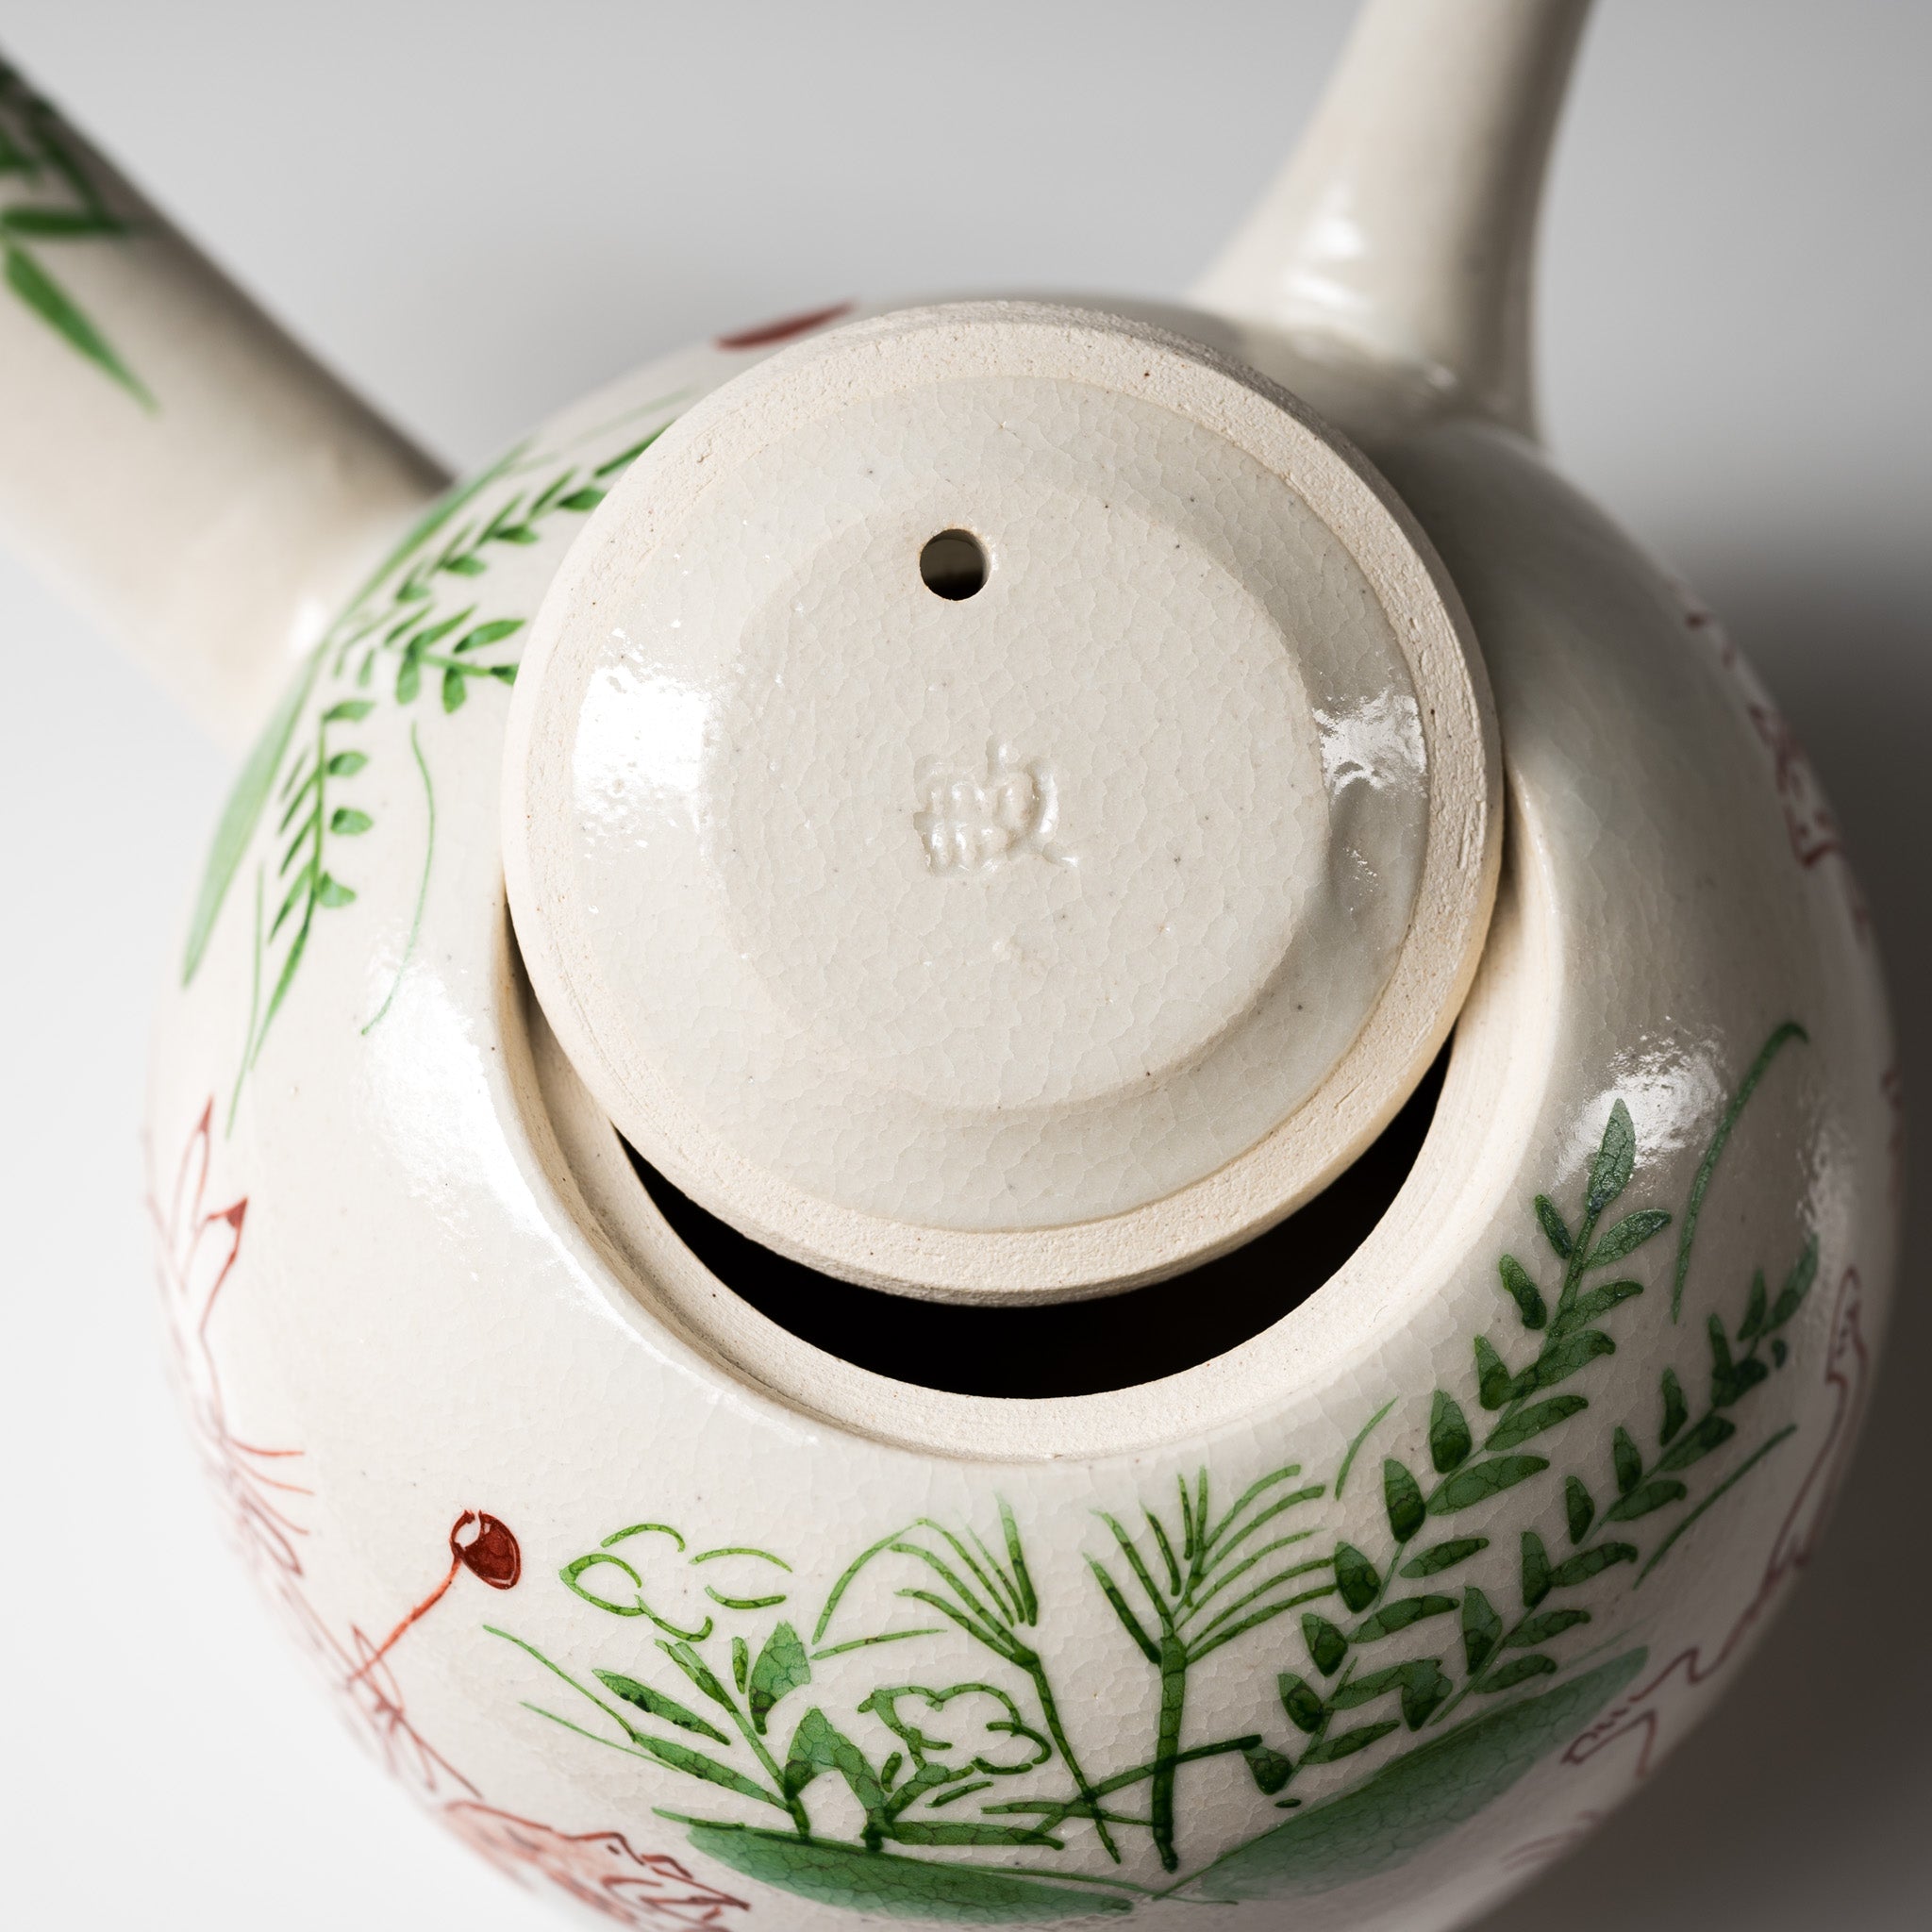 Kyo Kiyomizu Ware Hand made Teapot - Gohon Kozanji  / 京焼・清水焼き